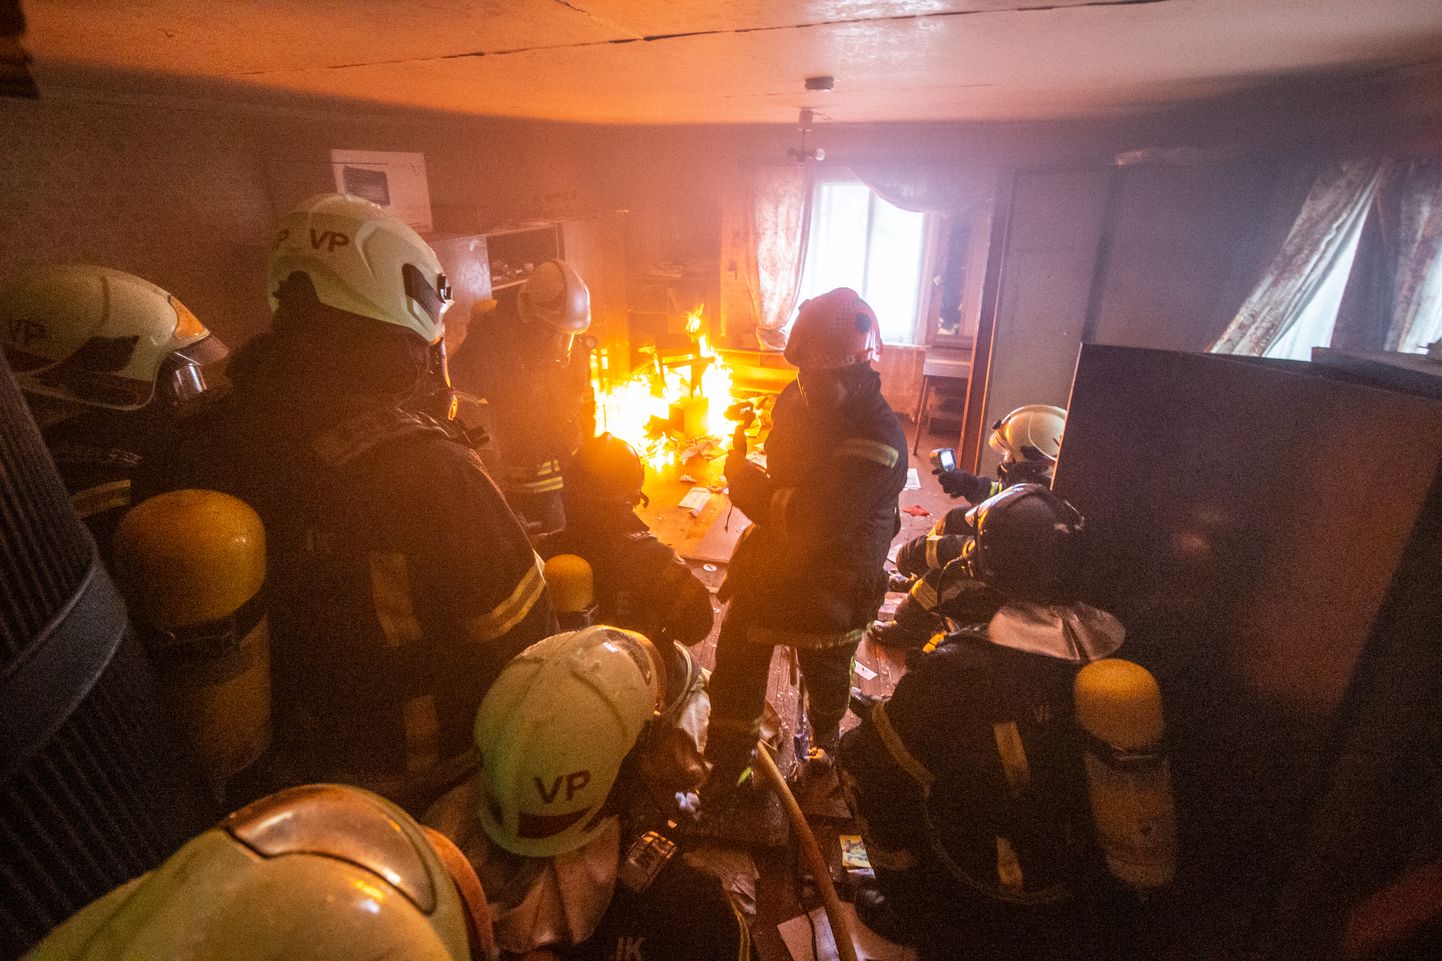 Пожарные спасатели работают в горящем и задымленном помещении. Фото сделано во время учений и носит иллюстративный характер.